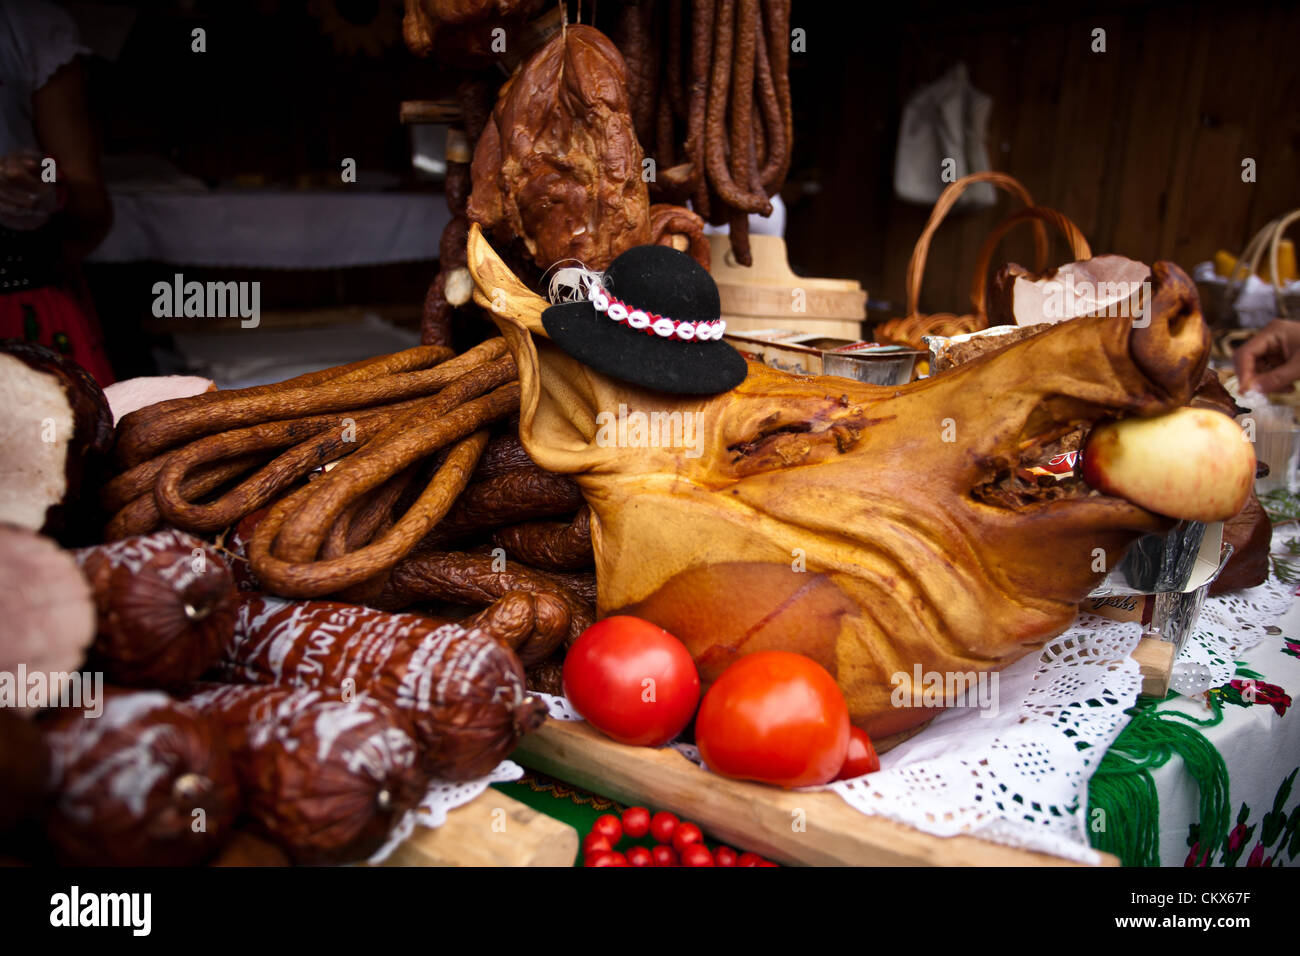 26. August 2012 Krakau / Polen - Marktstand mit Wurst und Fleisch während der jährliche traditionelle polnische Speisen Festival. Stockfoto